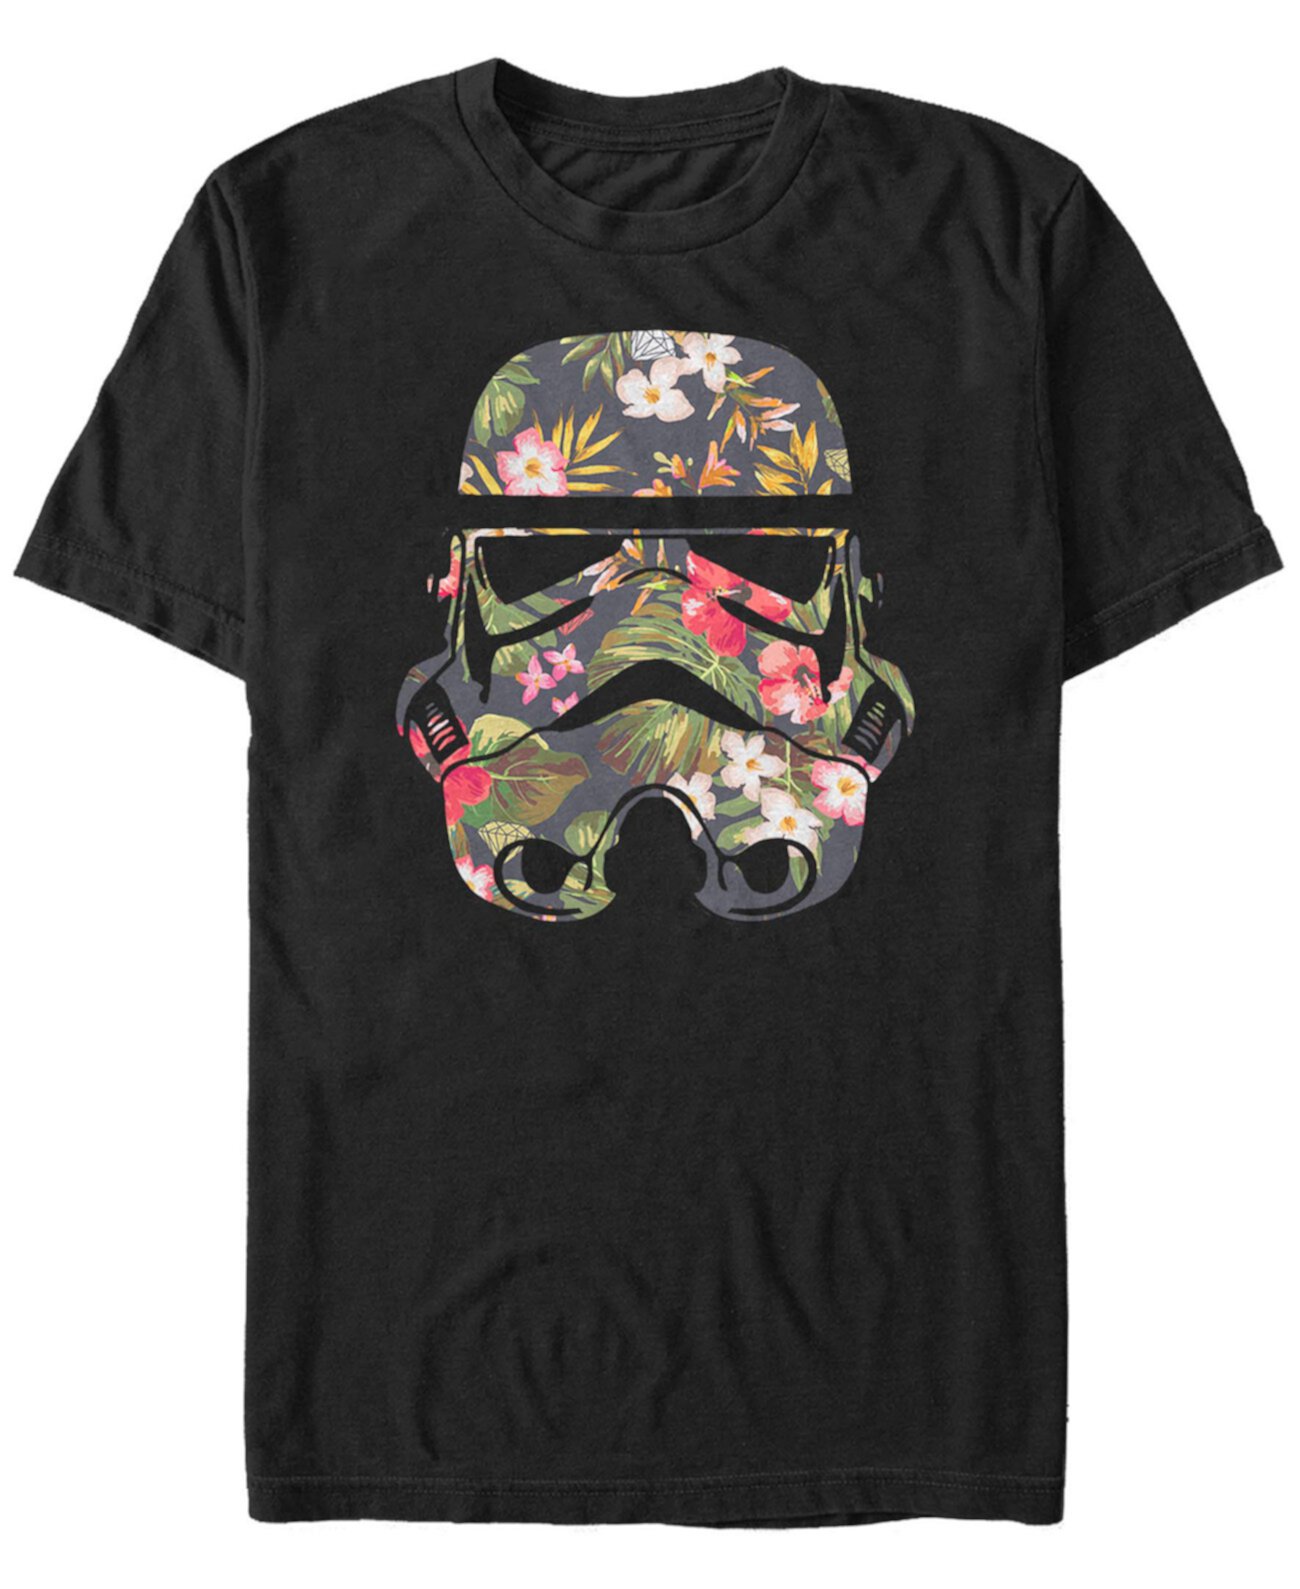 Мужская футболка с коротким рукавом и цветочным принтом Star Wars Tropical Stormtrooper FIFTH SUN